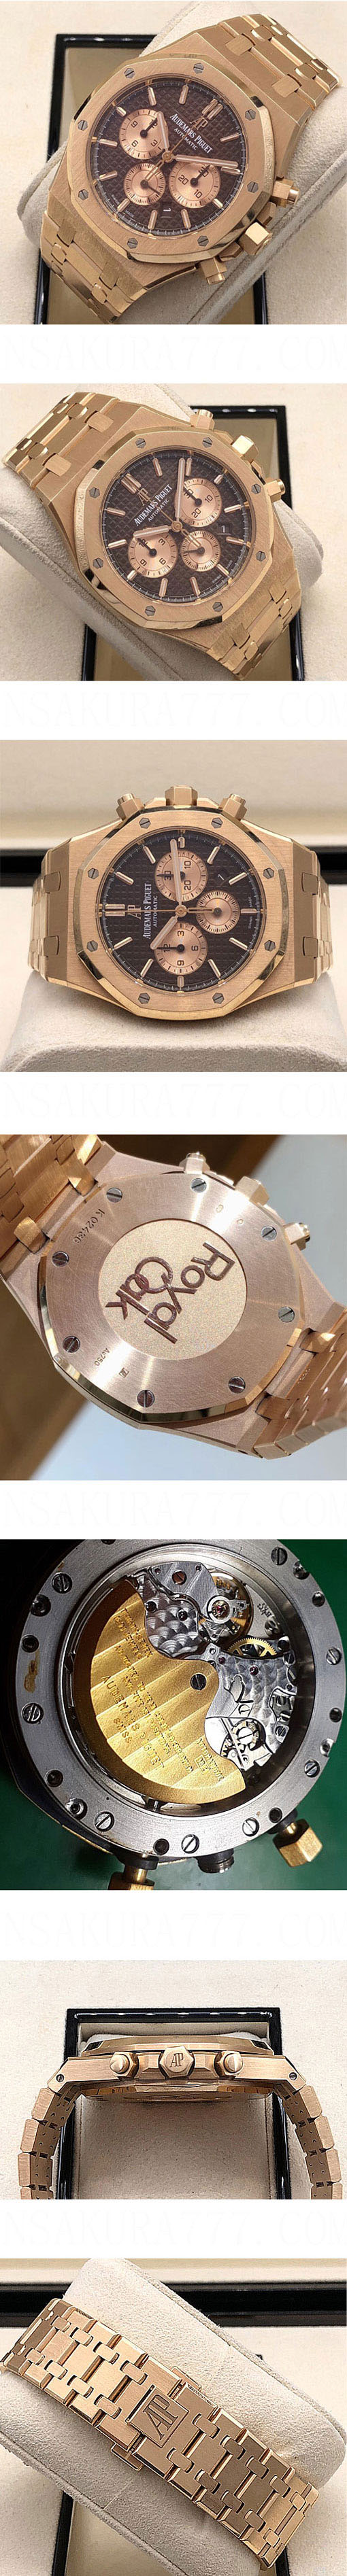 メンズ腕時計 AUDEMARS PIGUET オーデマピゲ ロイヤル オーク REF. 26331OR.OO.1220OR.02限定販売 Cal.2385搭載